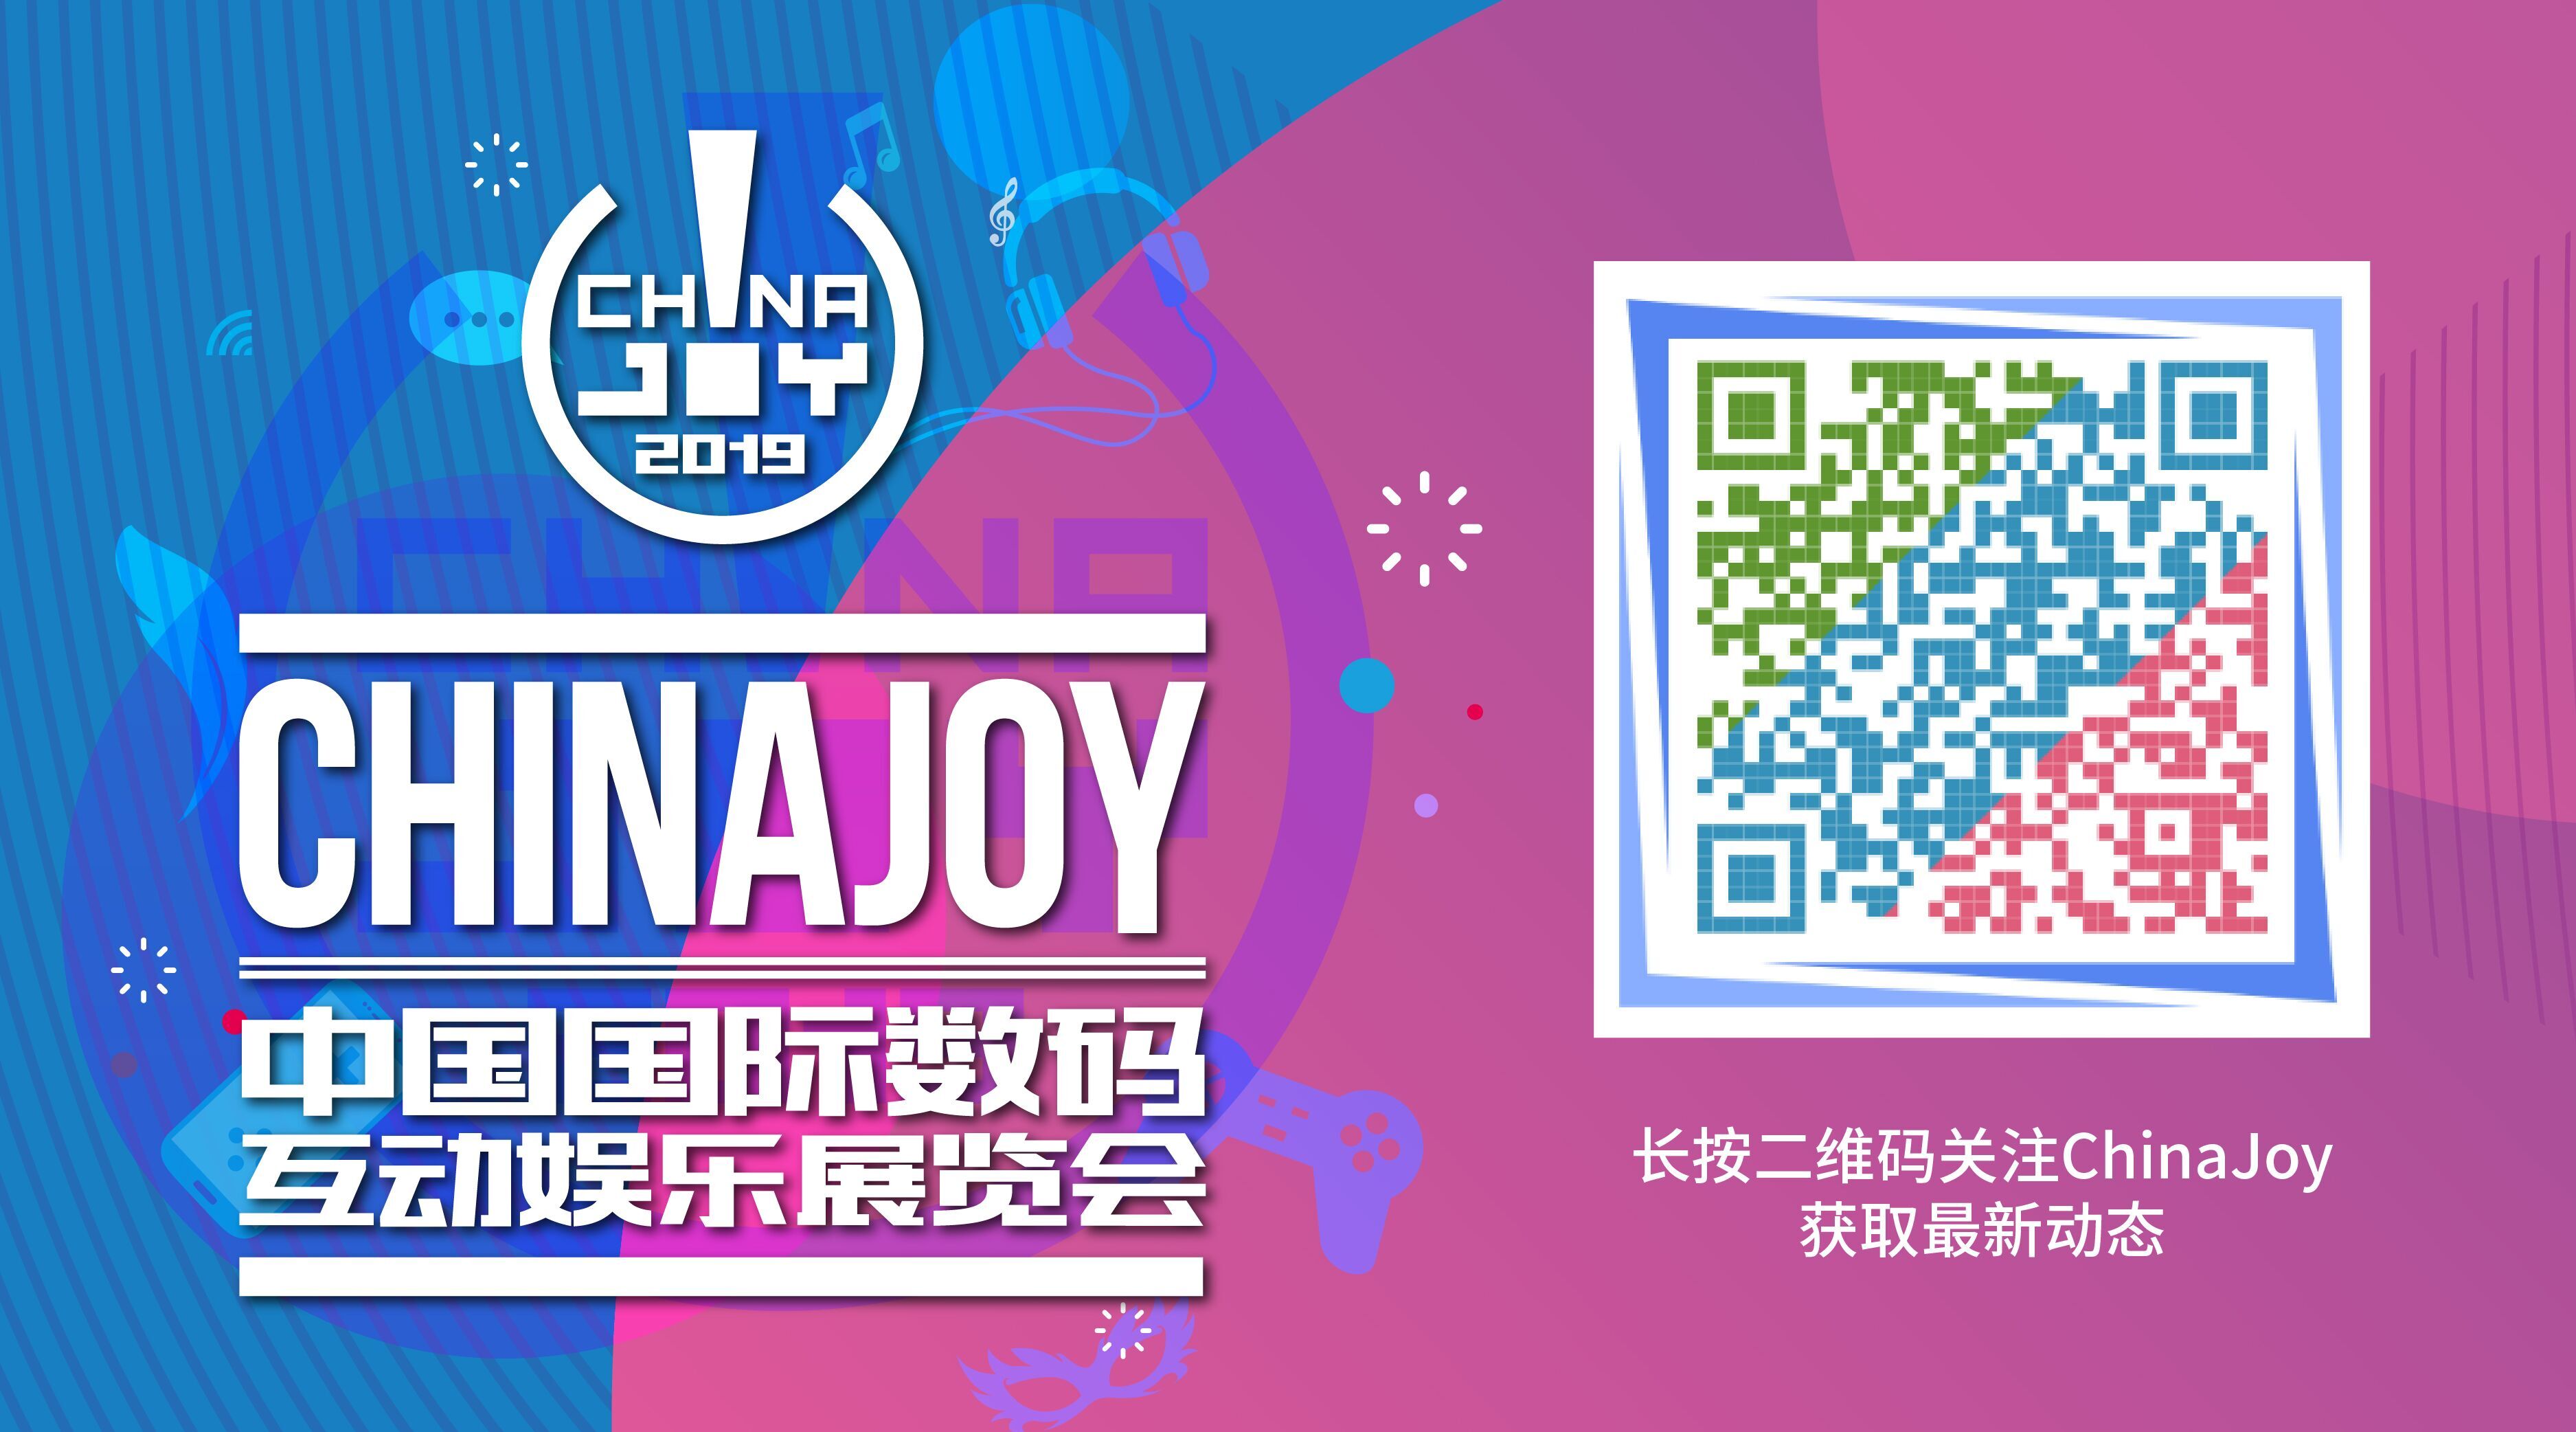 百恩互动娱乐将在2019ChinaJoyBTOB展区再掀“互动影像”浪潮！